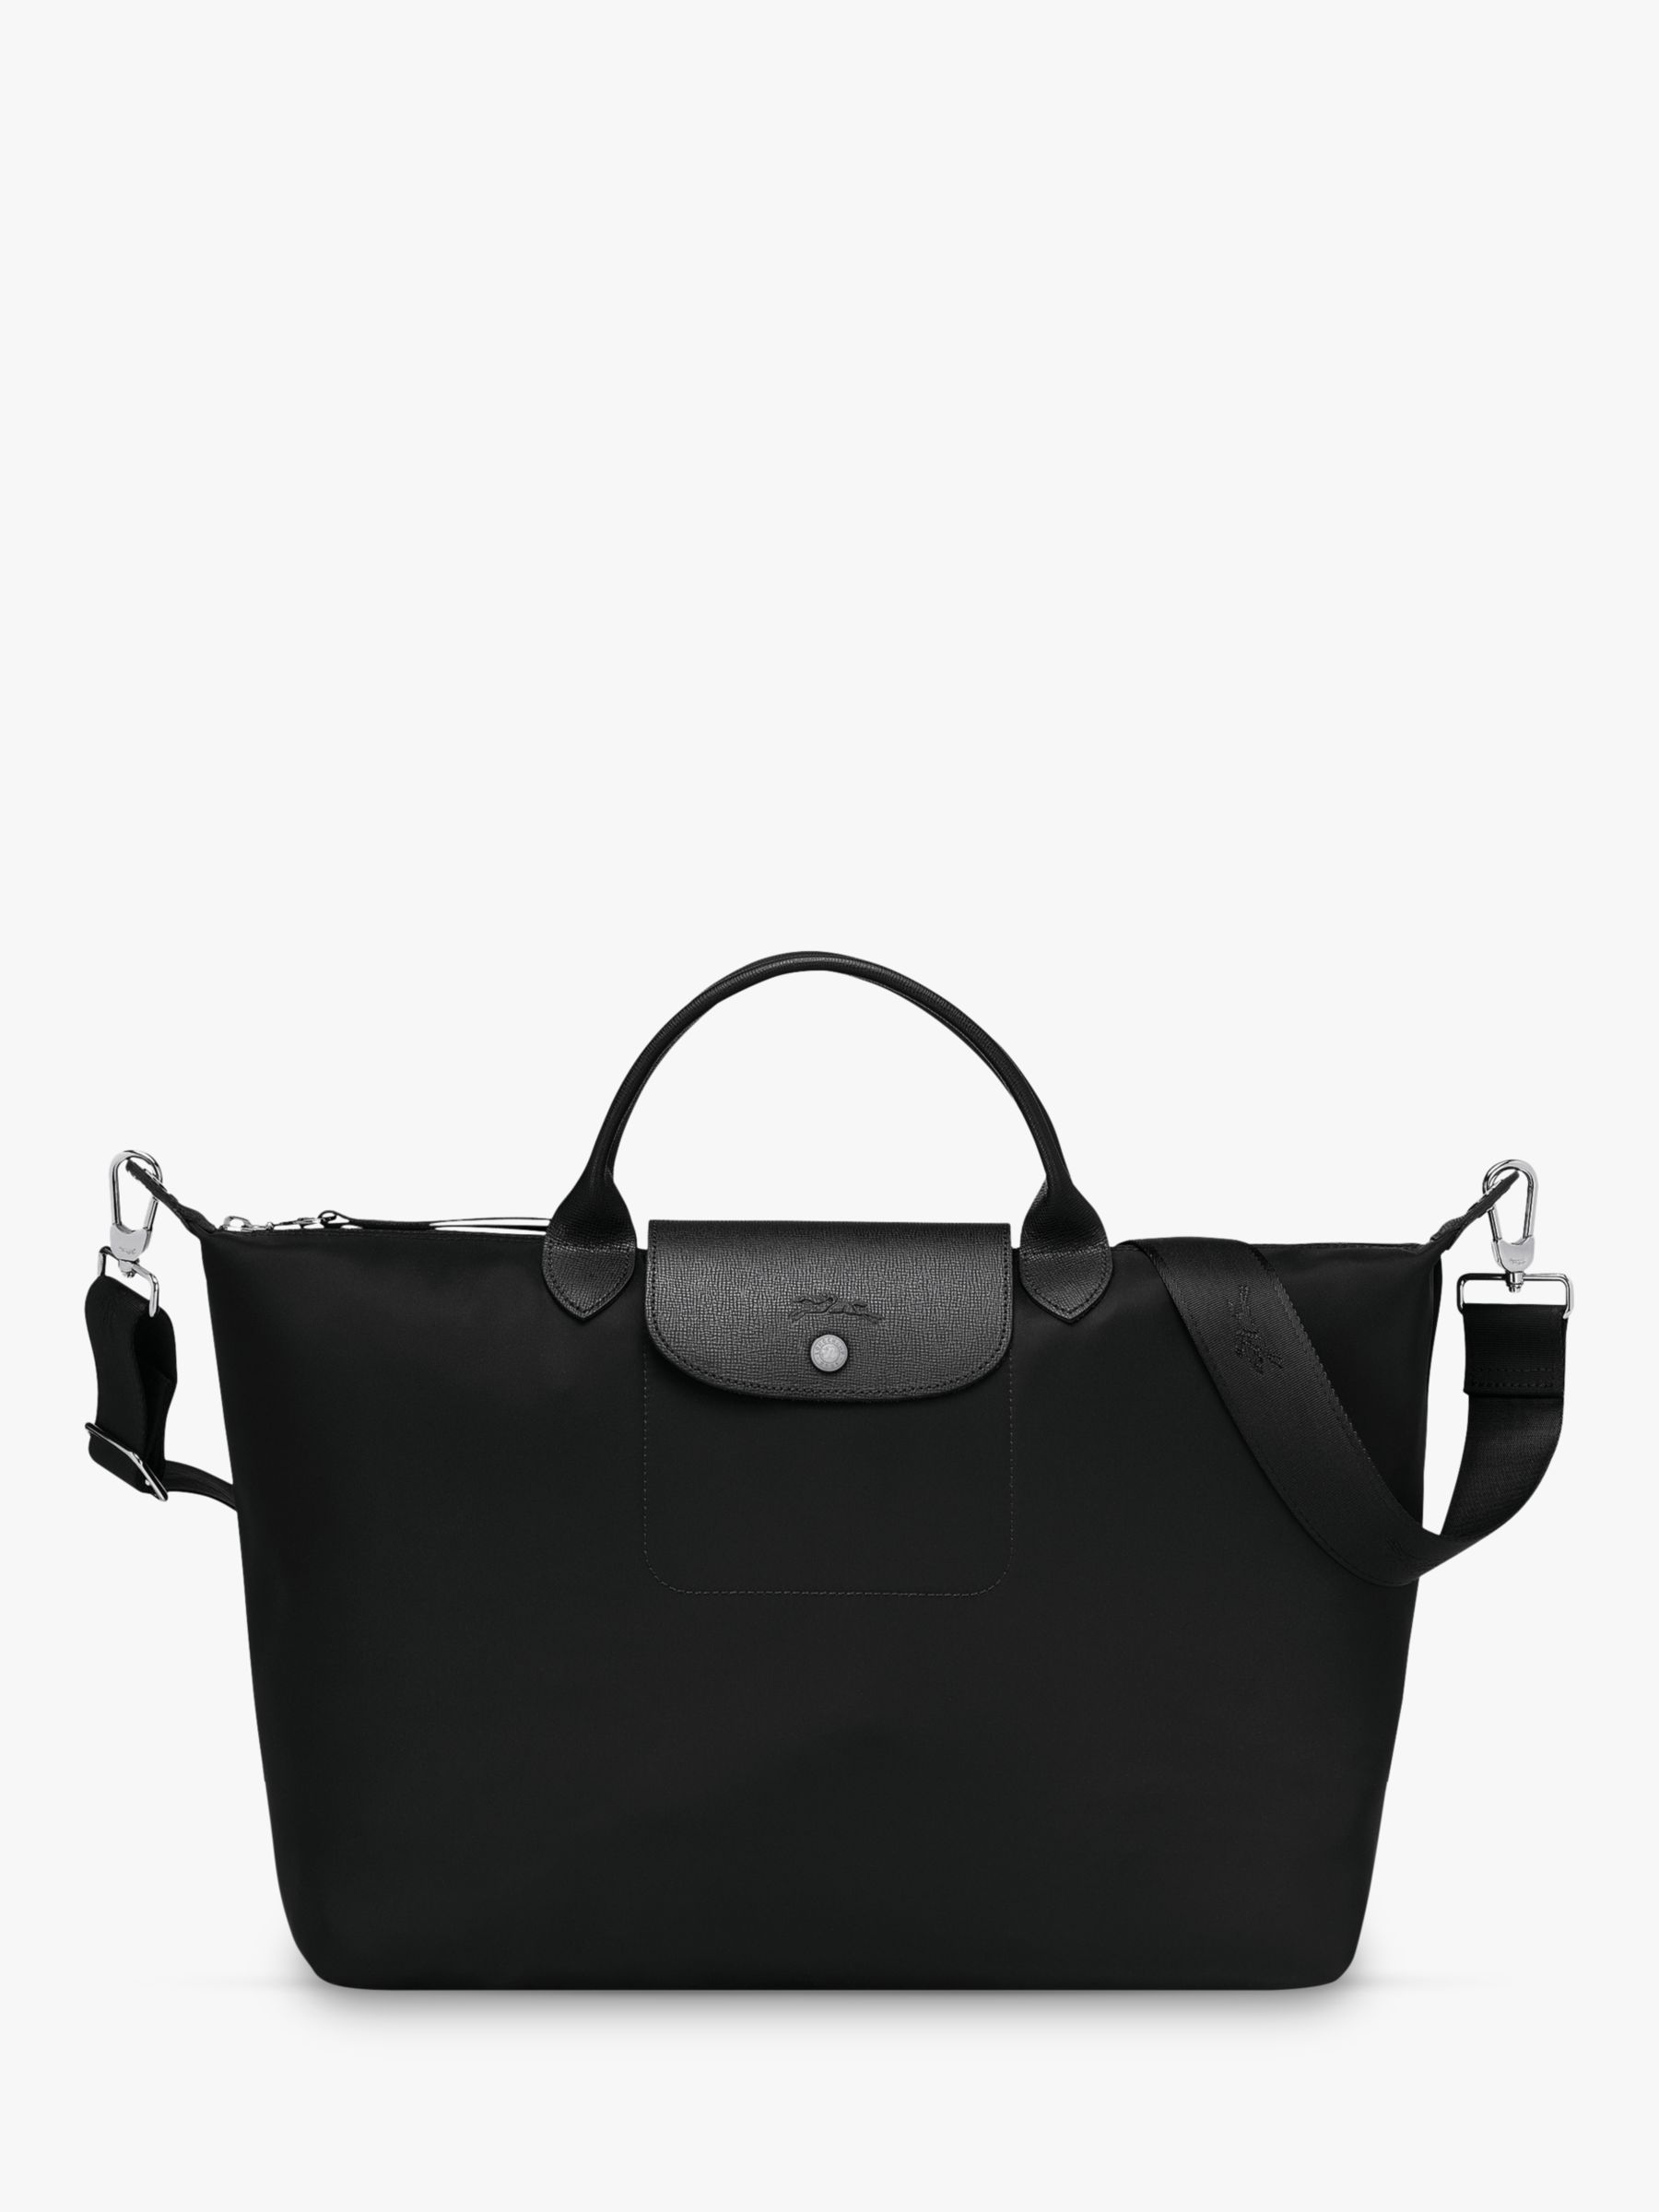 Longchamp Le Pliage Néo XL Top Handle Bag, Black